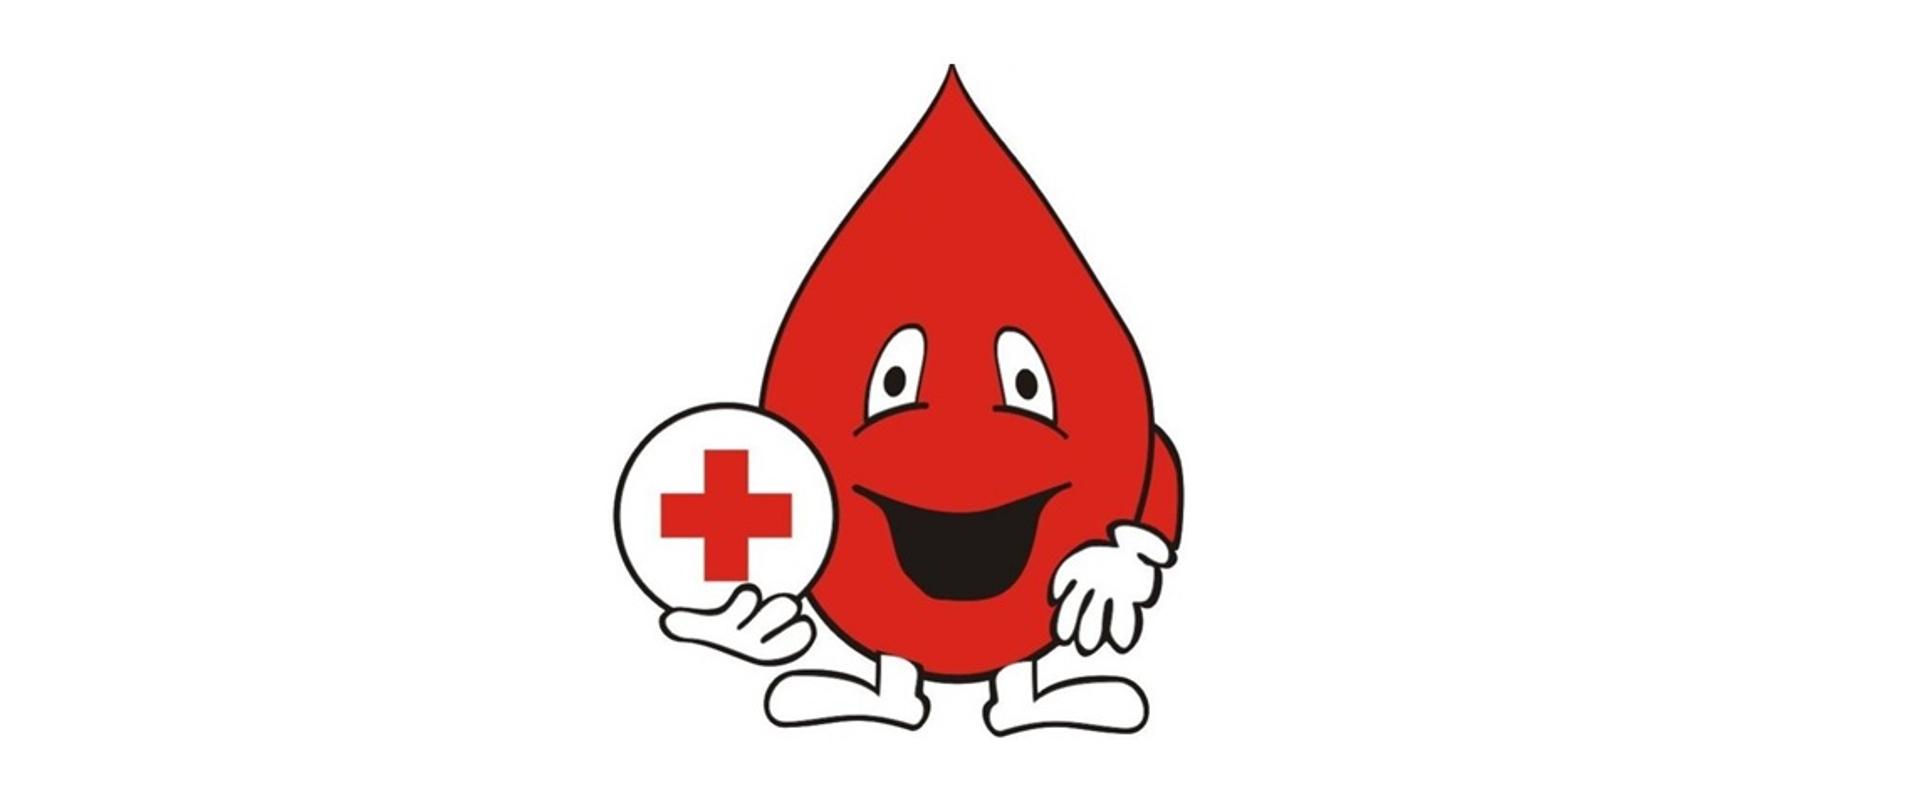 Zdjęcie przedstawia symbol HDK - kroplę krwi